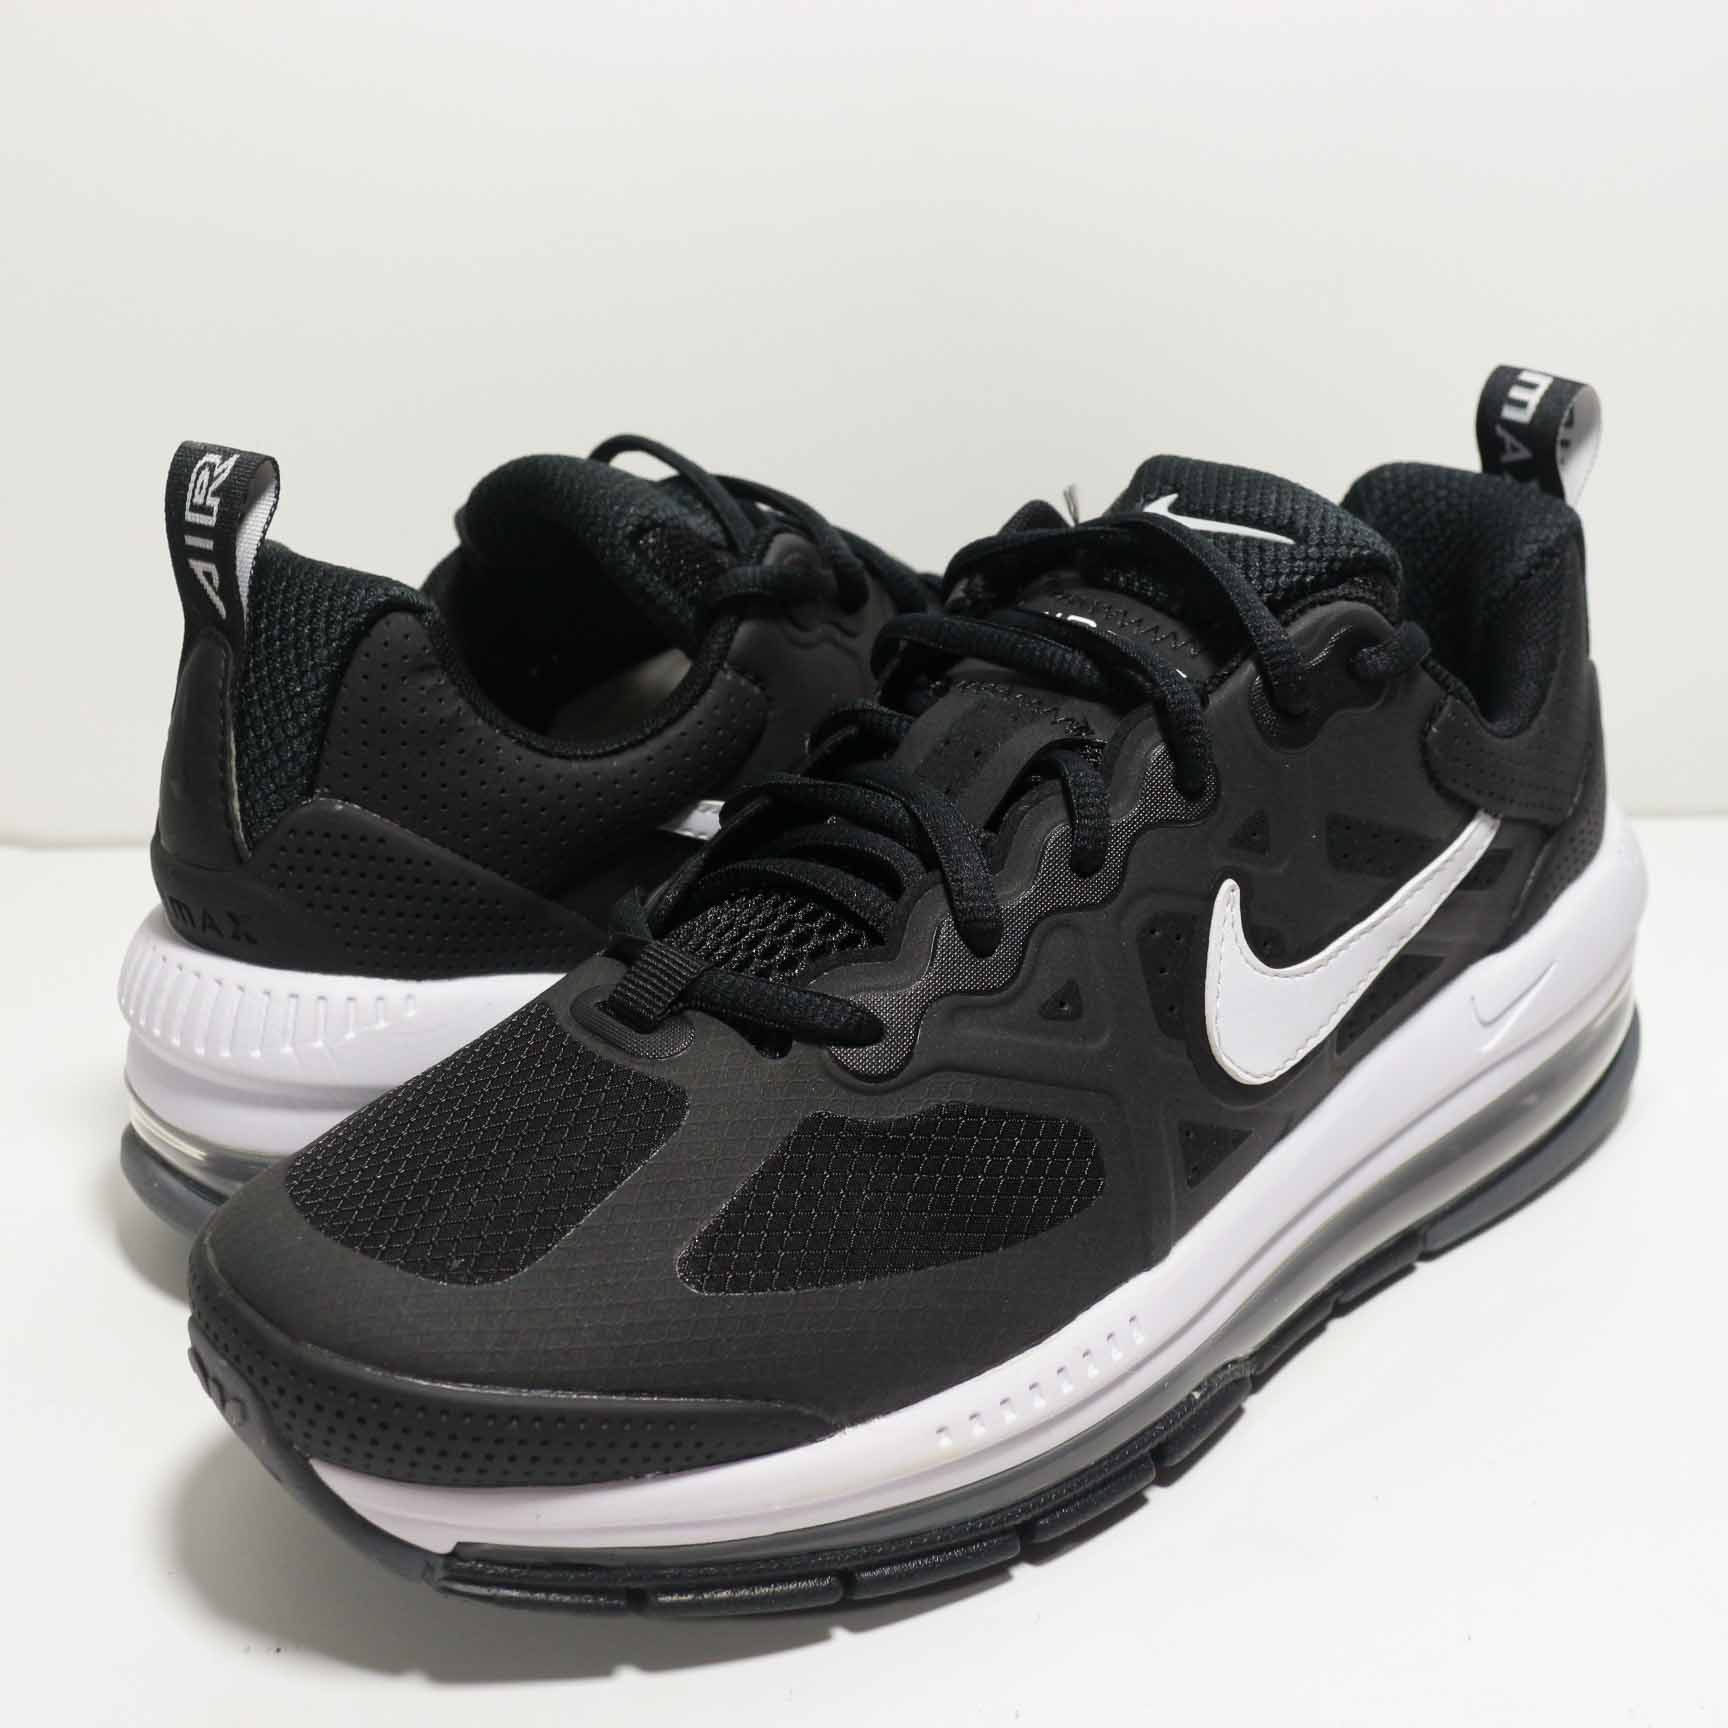 Nike Air Max Genome Black White Shoes